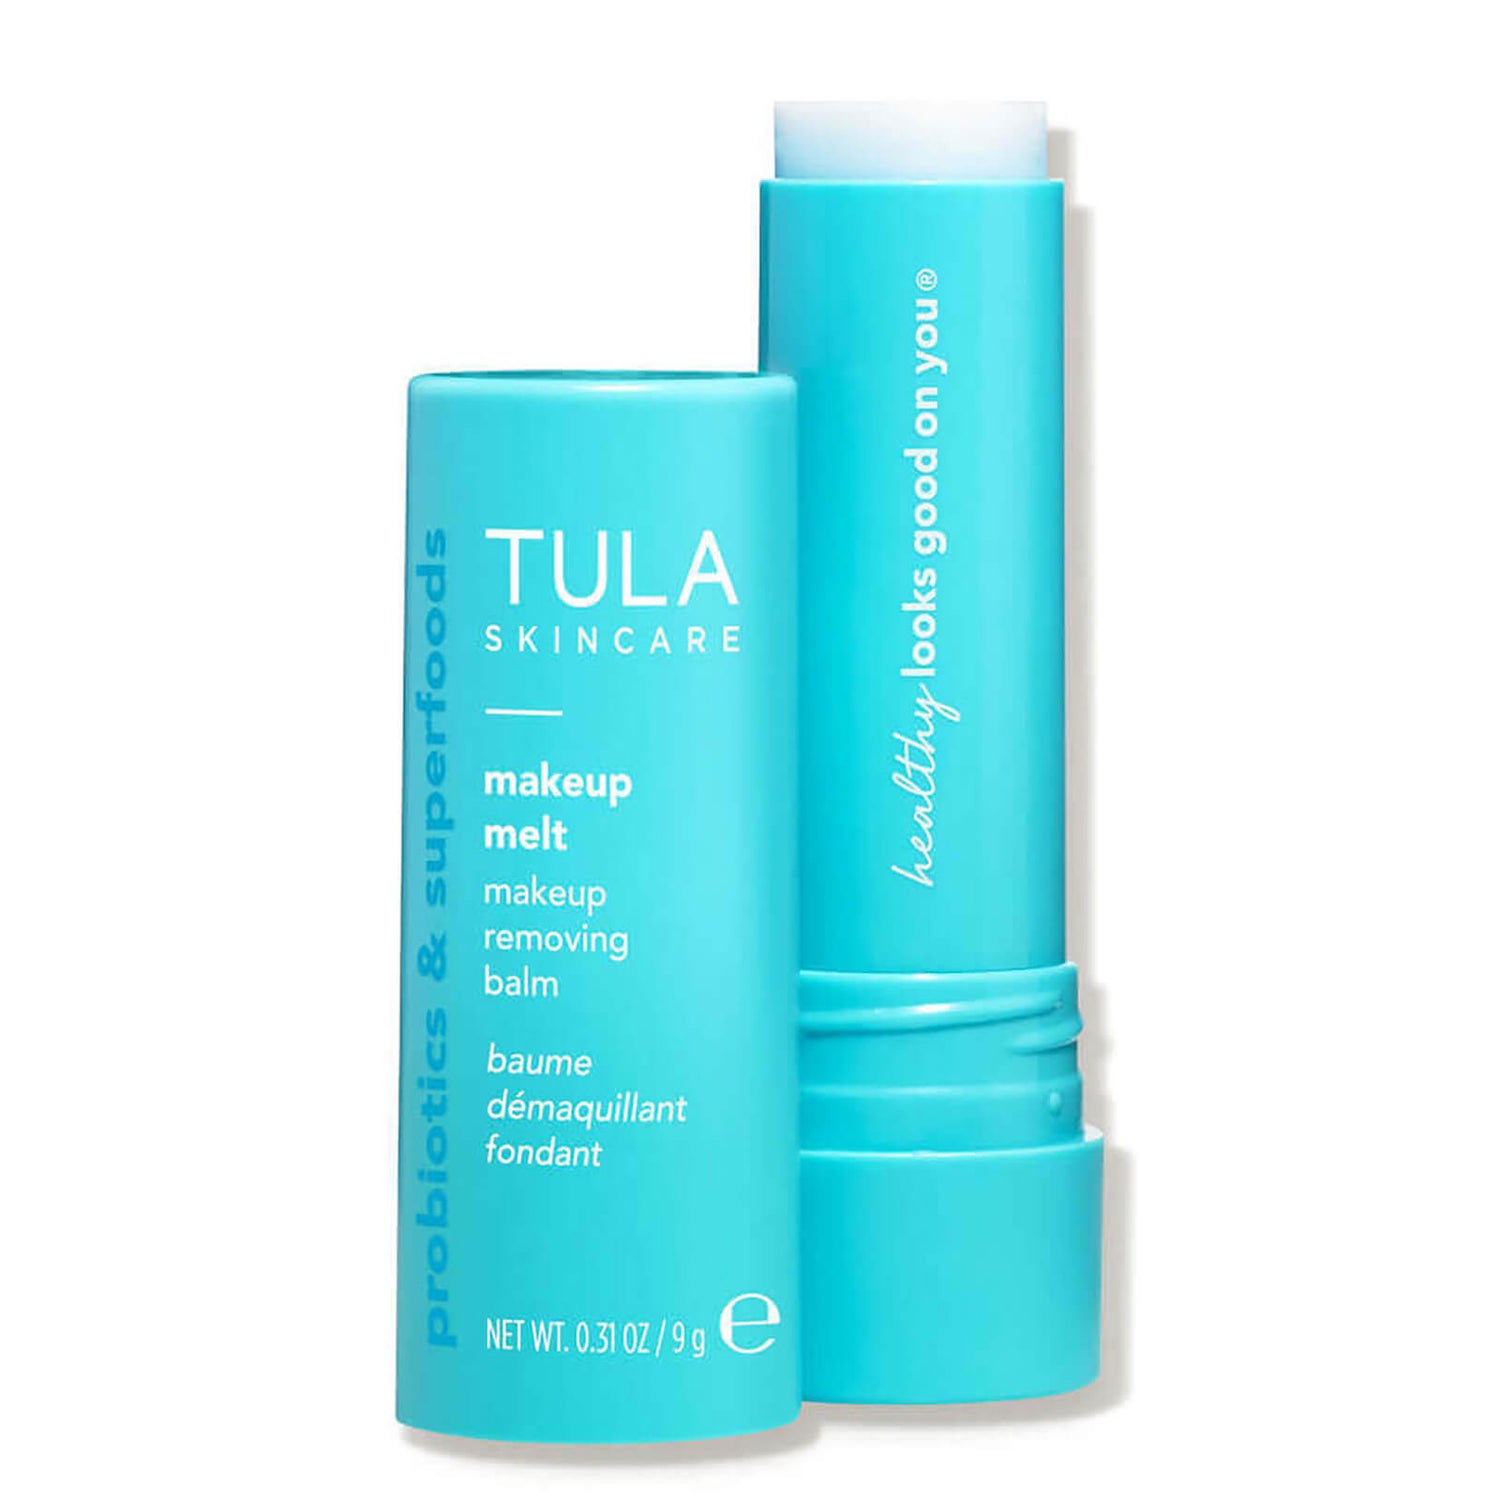 TULA Skincare Makeup Melt Makeup Removing Balm (0.31 oz.)